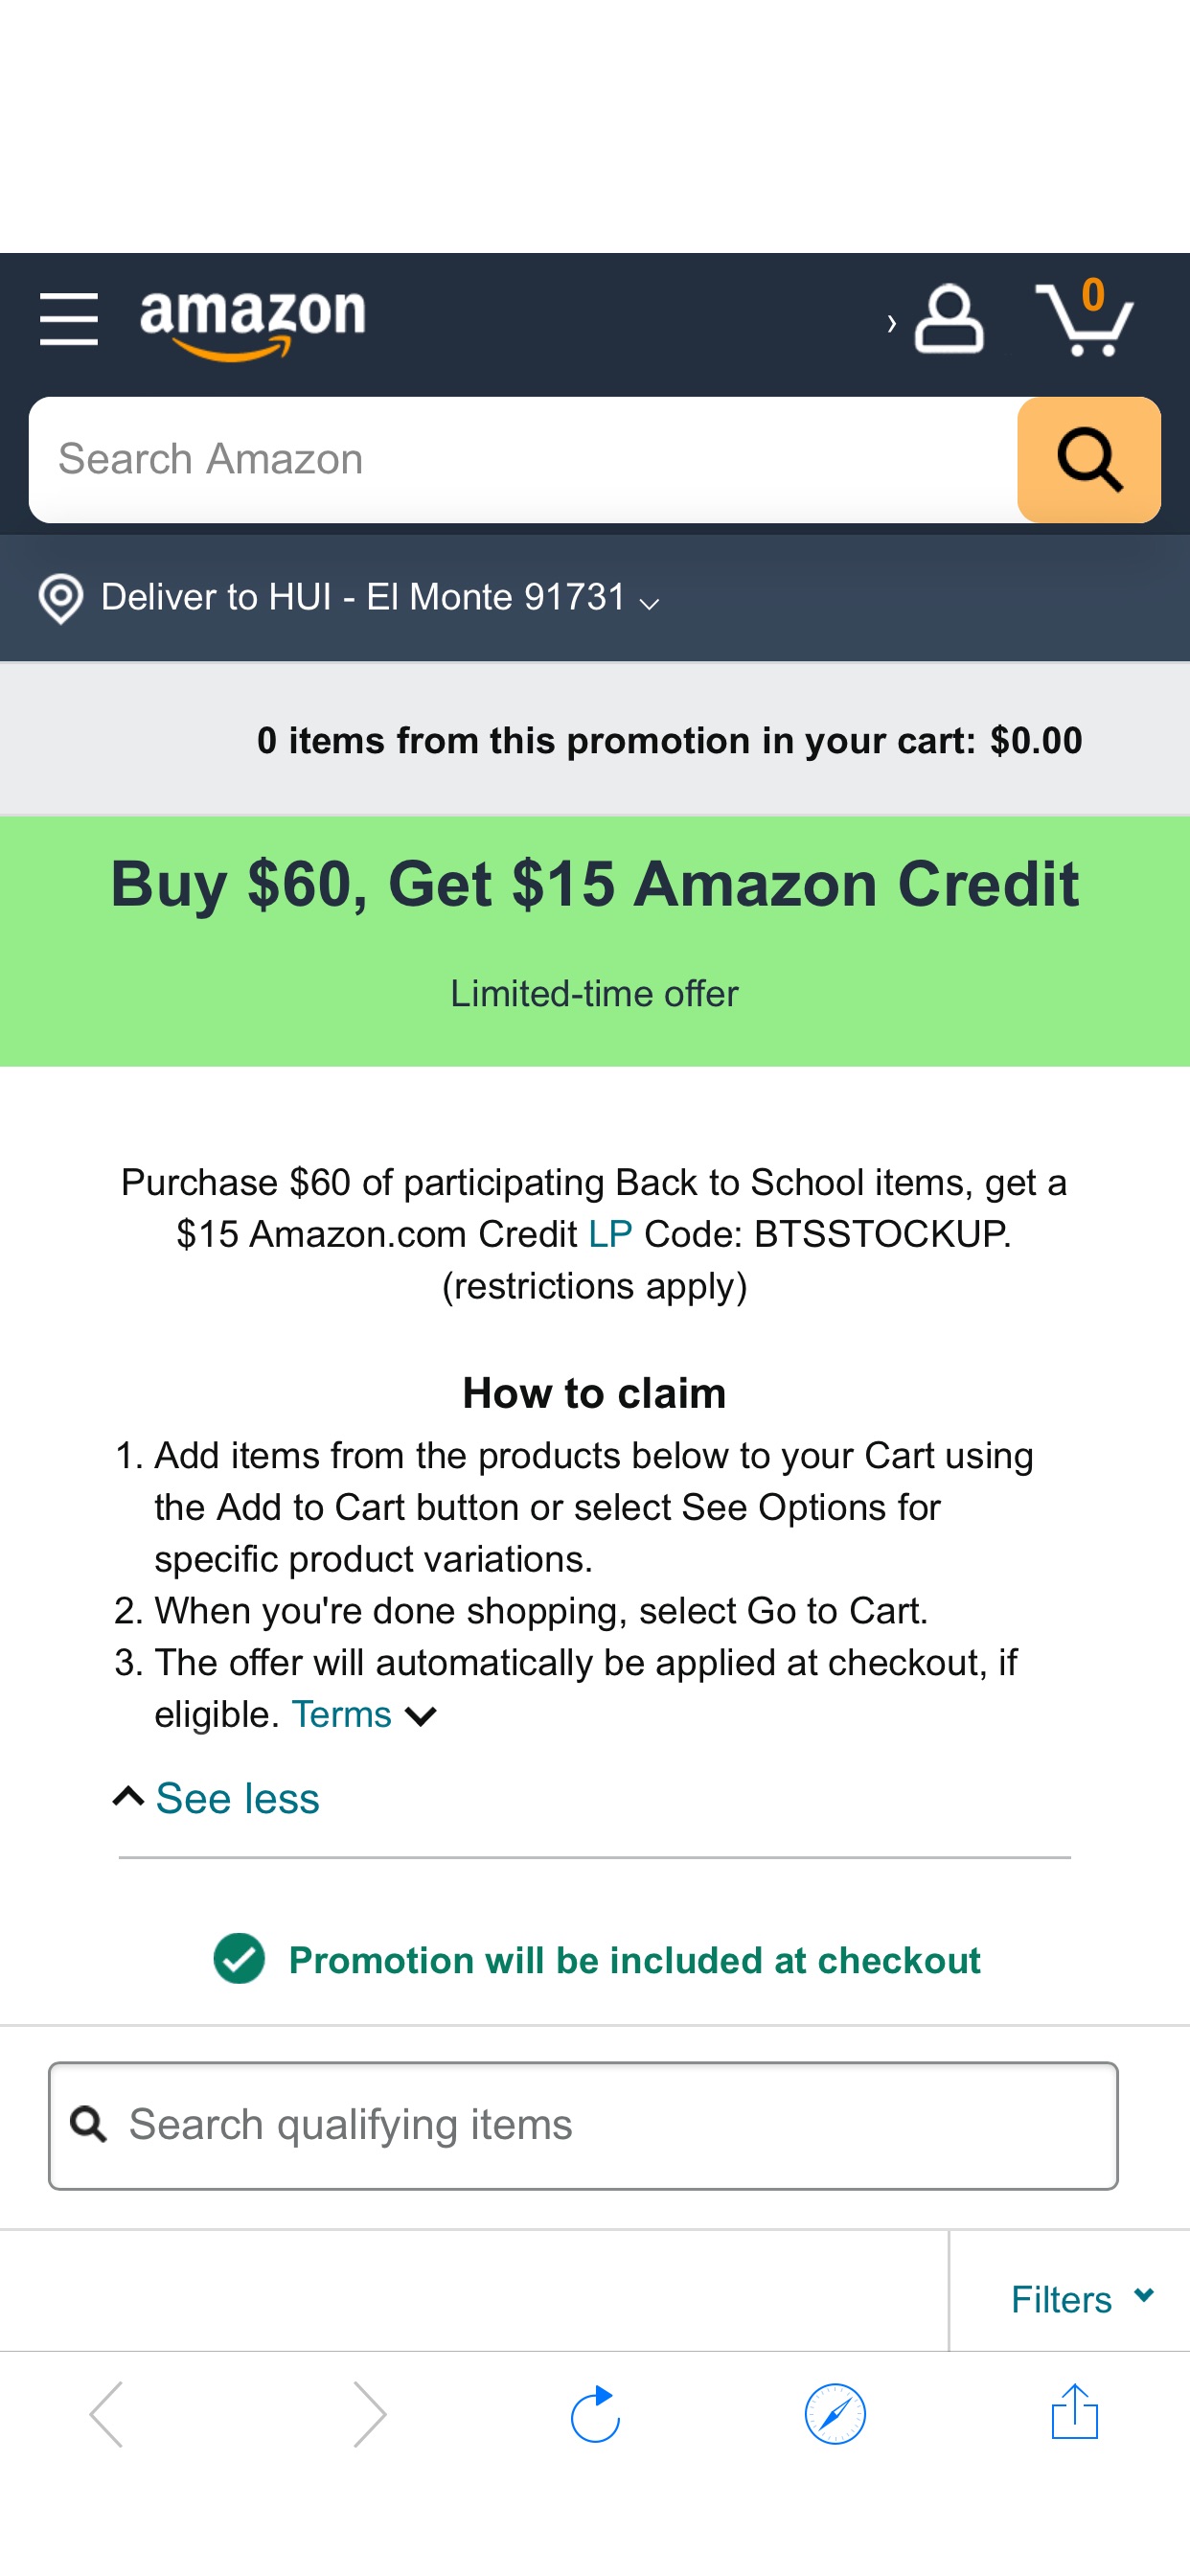 亚马逊购买$60参加Back to school活动的商品，返$15 credit，offer会在结账时自动添加